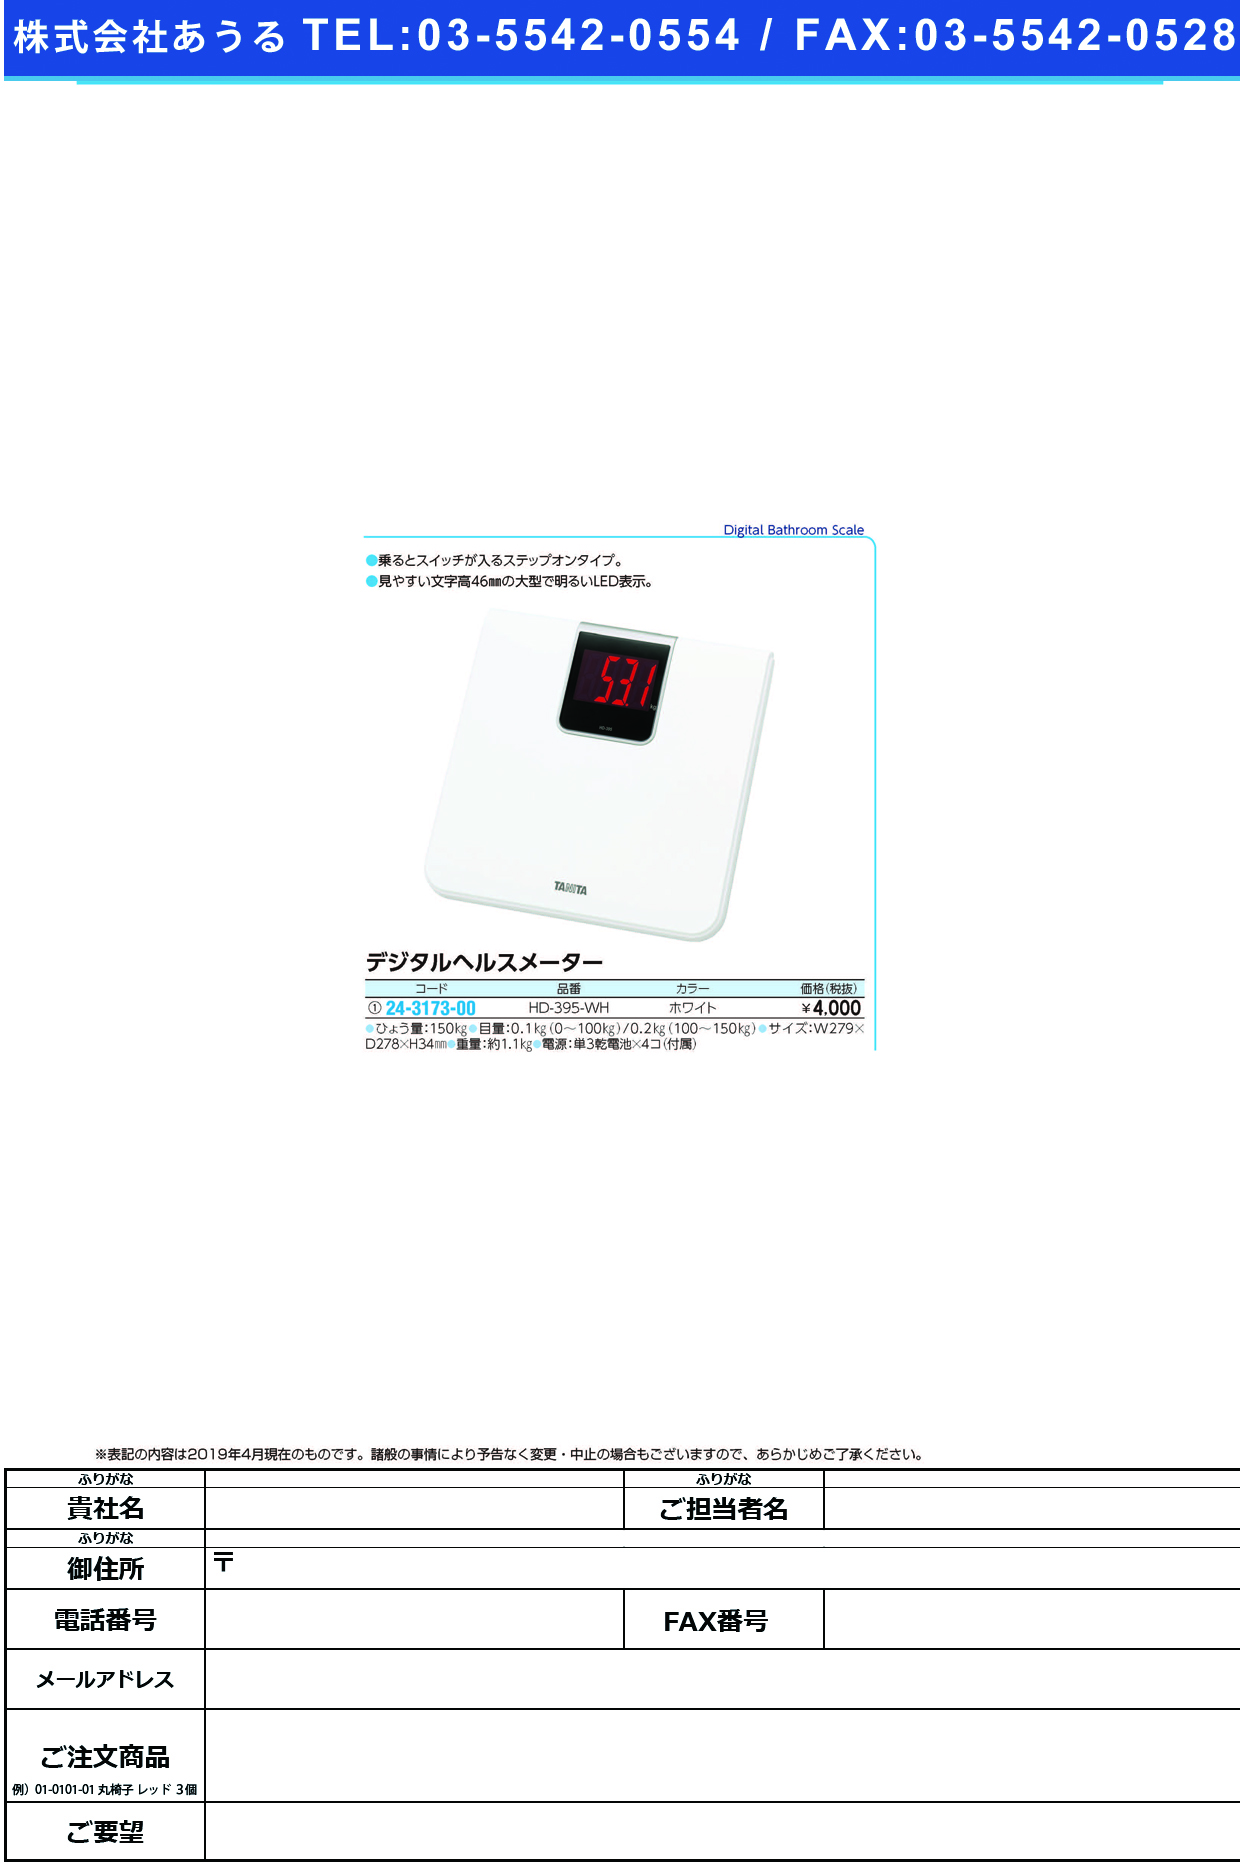 (24-3173-00)デジタルヘルスメーター HD-395-WH(ﾎﾜｲﾄ) ﾃﾞｼﾞﾀﾙﾍﾙｽﾒｰﾀｰ(タニタ)【1台単位】【2019年カタログ商品】